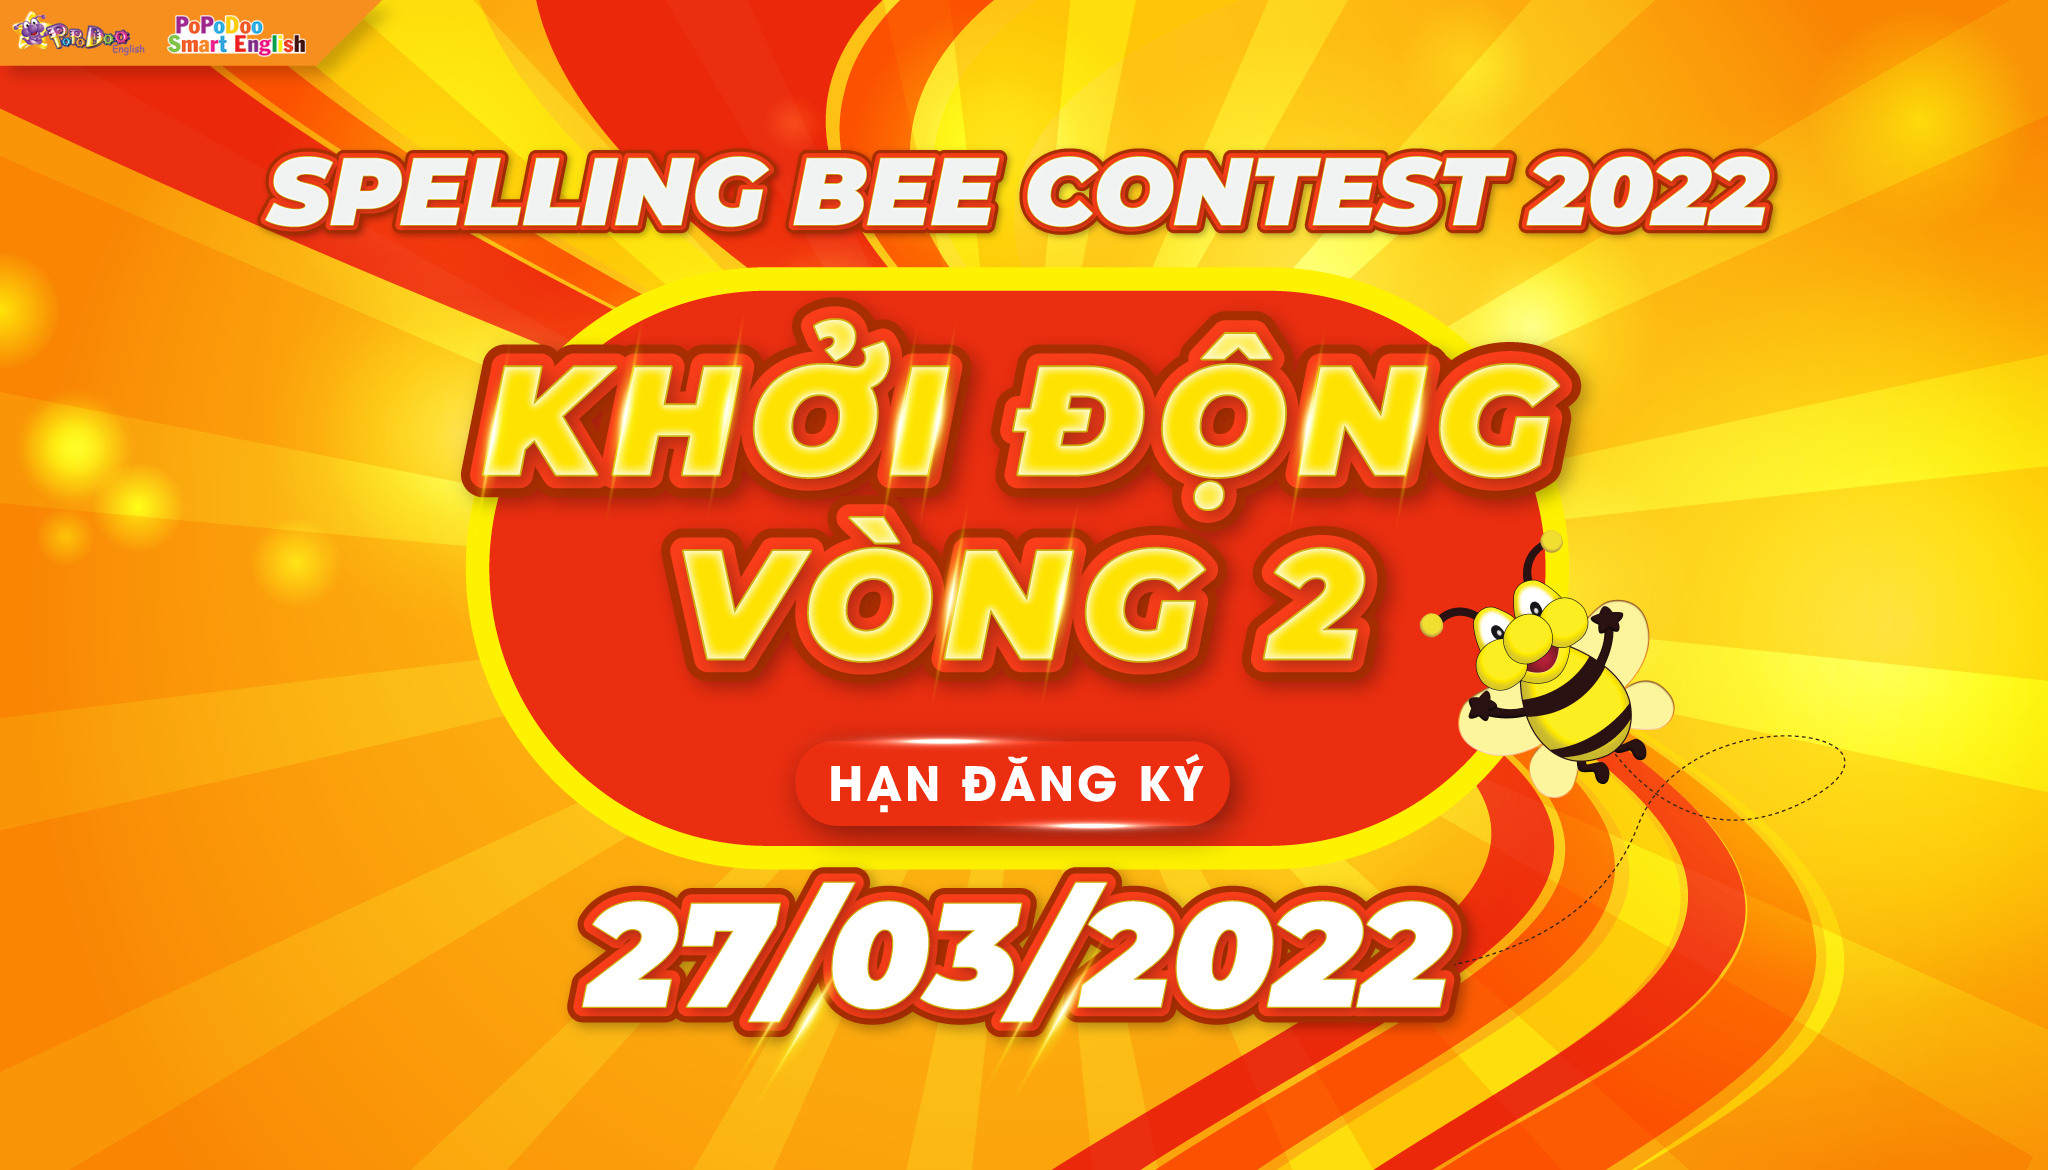 KHỞI ĐỘNG VÒNG 2 - SPELLING BEE CONTEST 2022